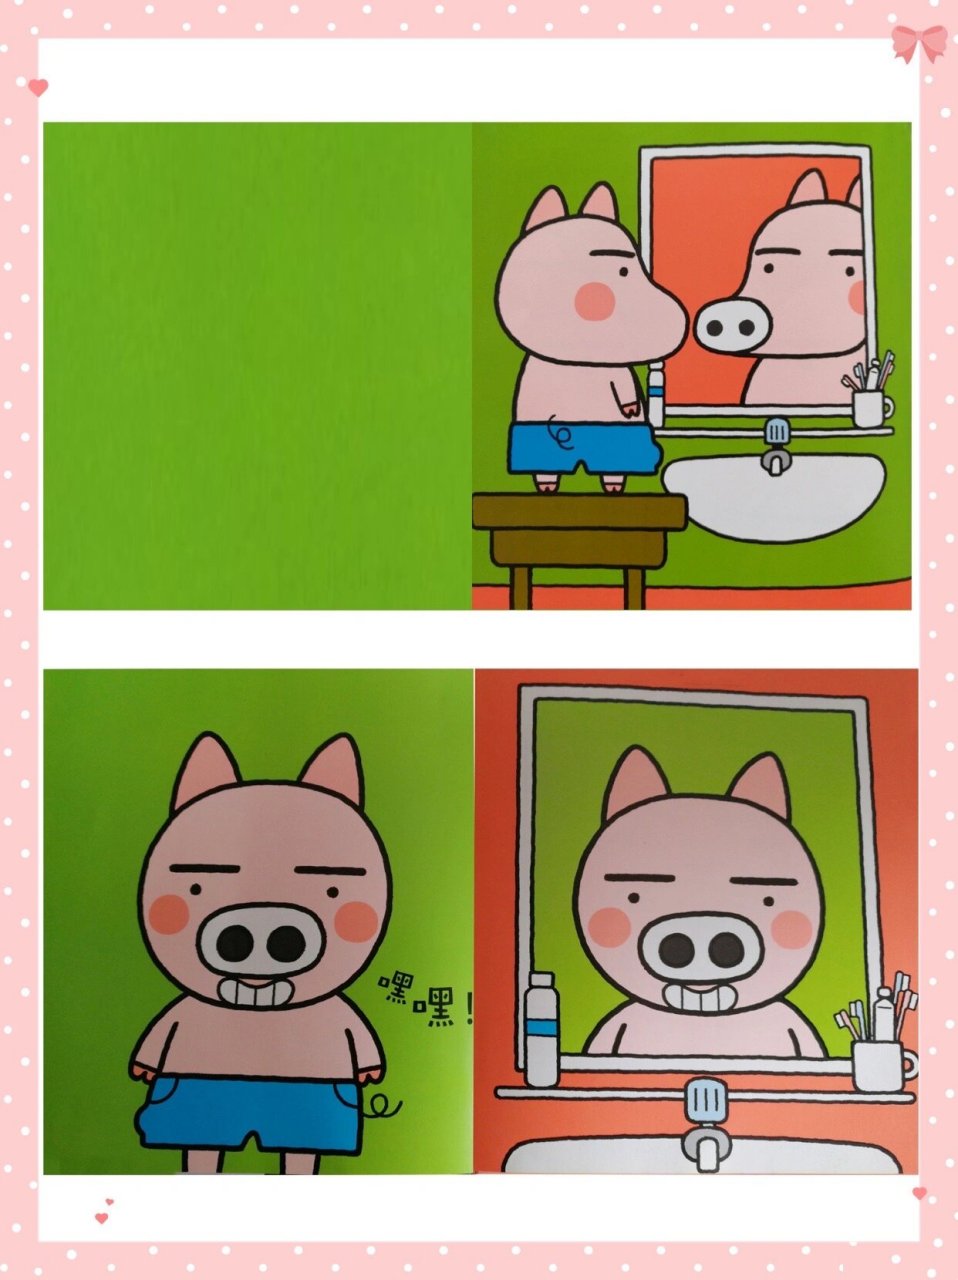 猪照镜子表情包图片